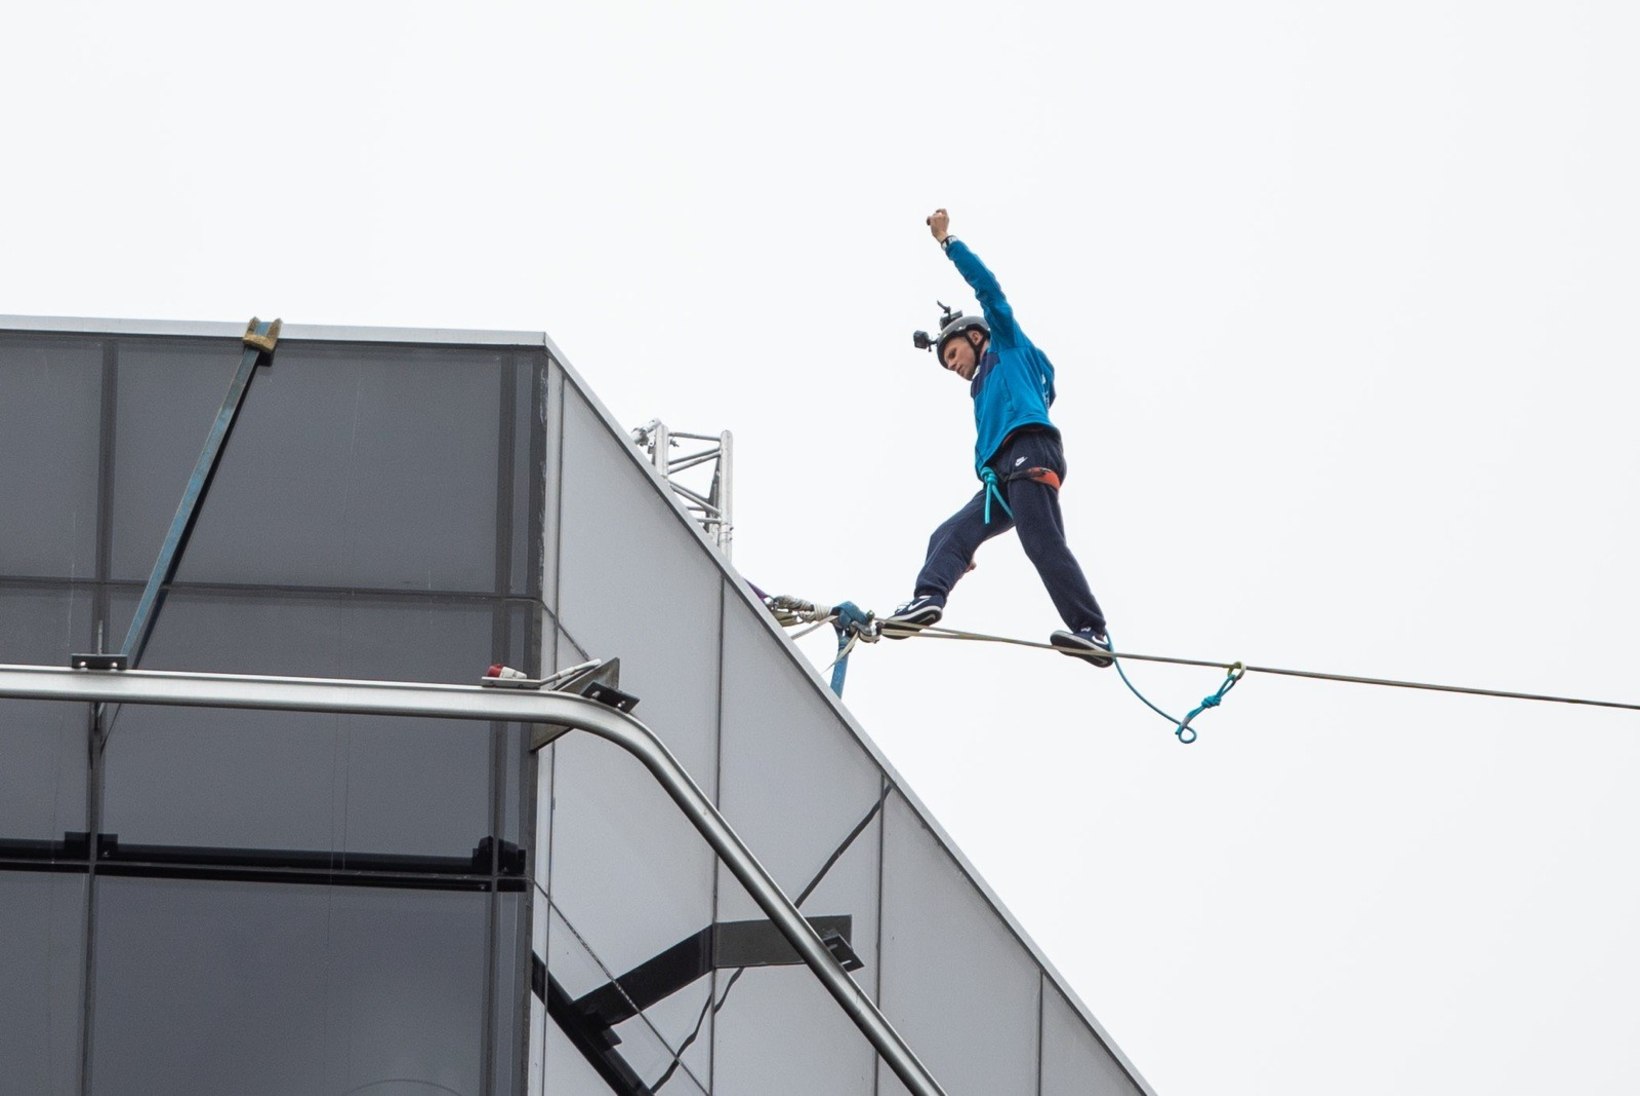 FOTOD JA VIDEOD | Eesti kuulsaim slackliner Jaan Roose tegi Tallinna tornide vahel trikitades maailmarekordi